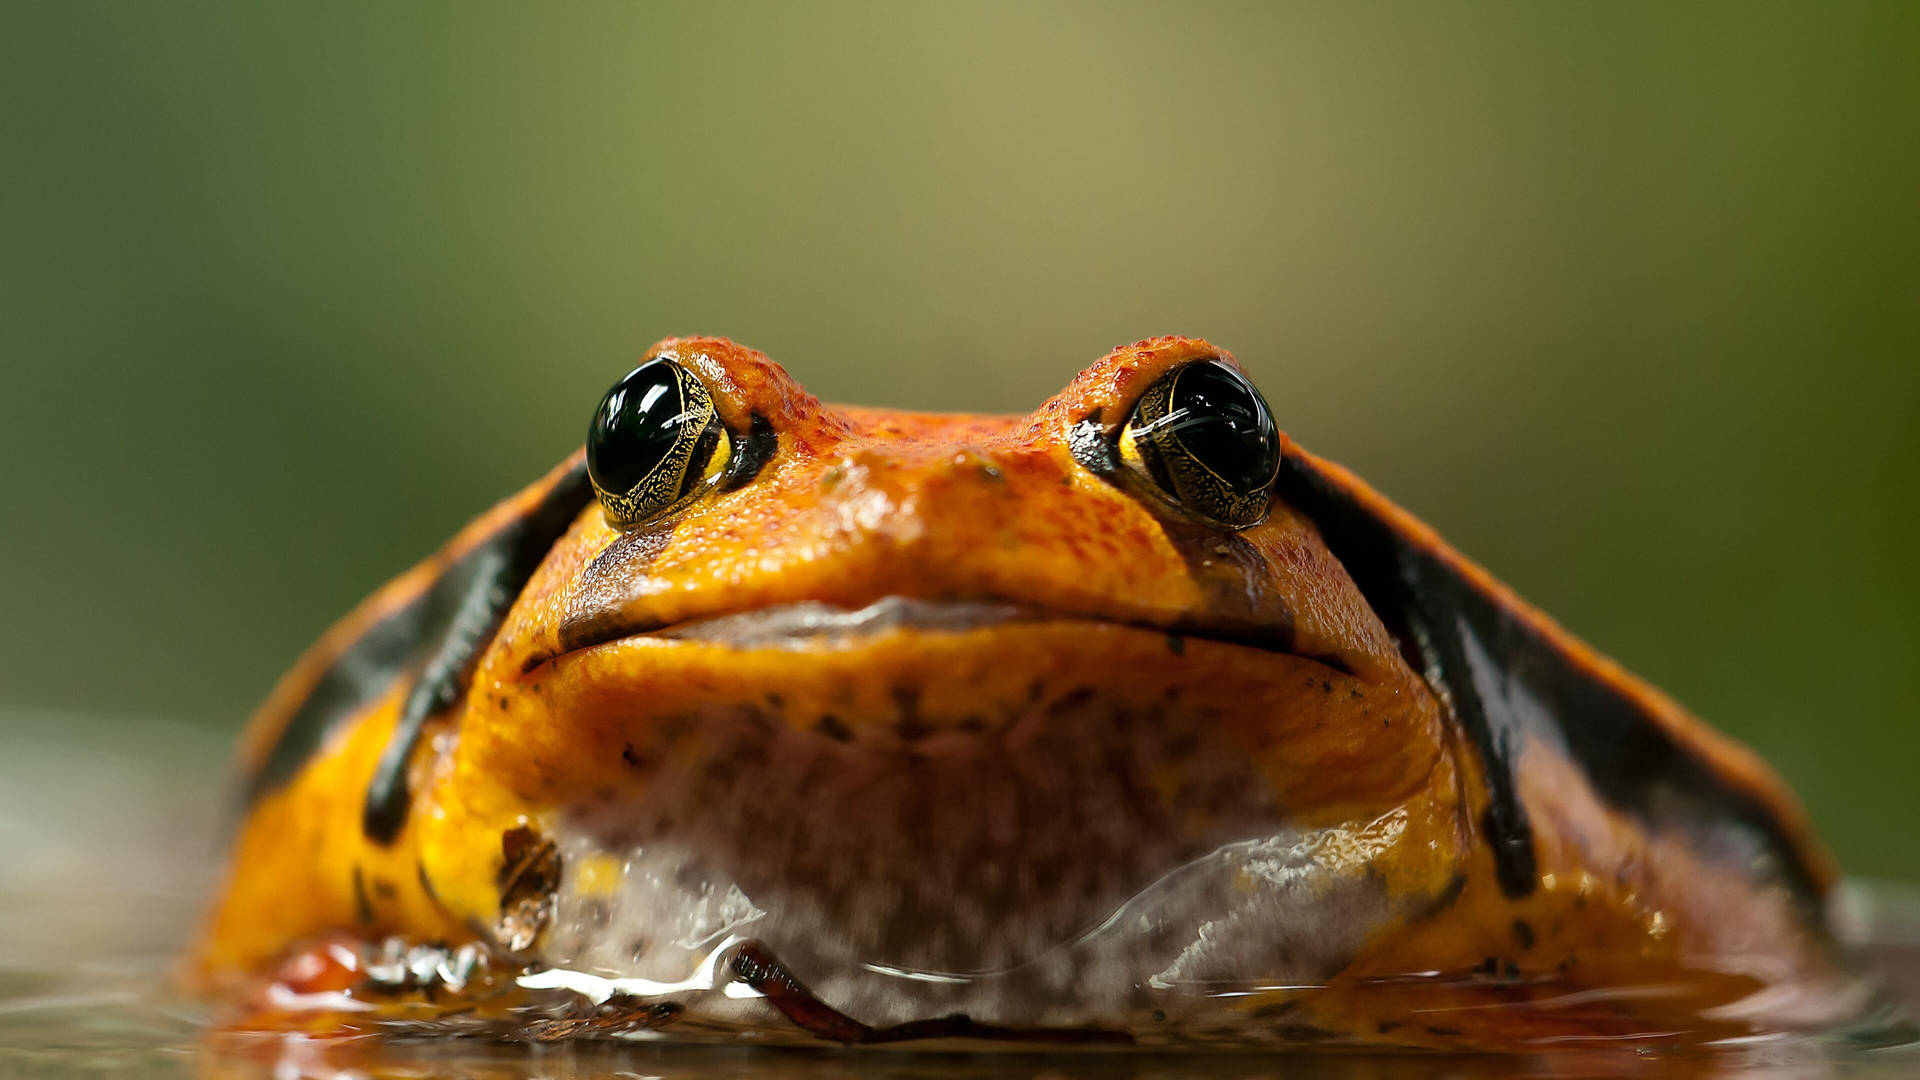 Kawaii Frog With Big Eyes